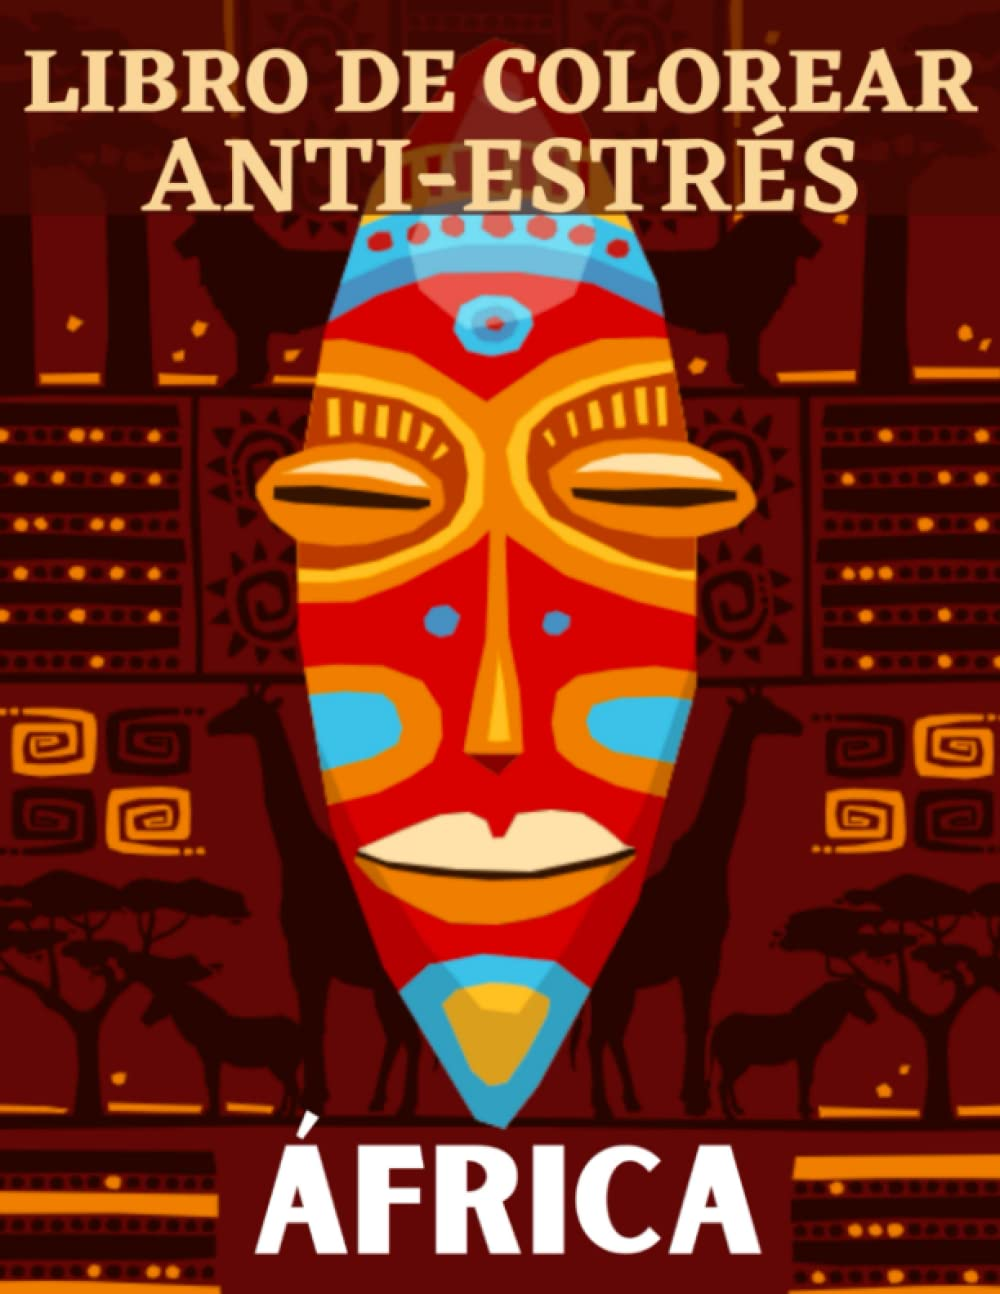 Libro de colorear ANTI-ESTRÉS Africa: Libro para colorear sobre África - 25 dibujos sobre el tema de África para colorear en casa o de viajes - Gran ... para relajarse en paz (Spanish Edition)